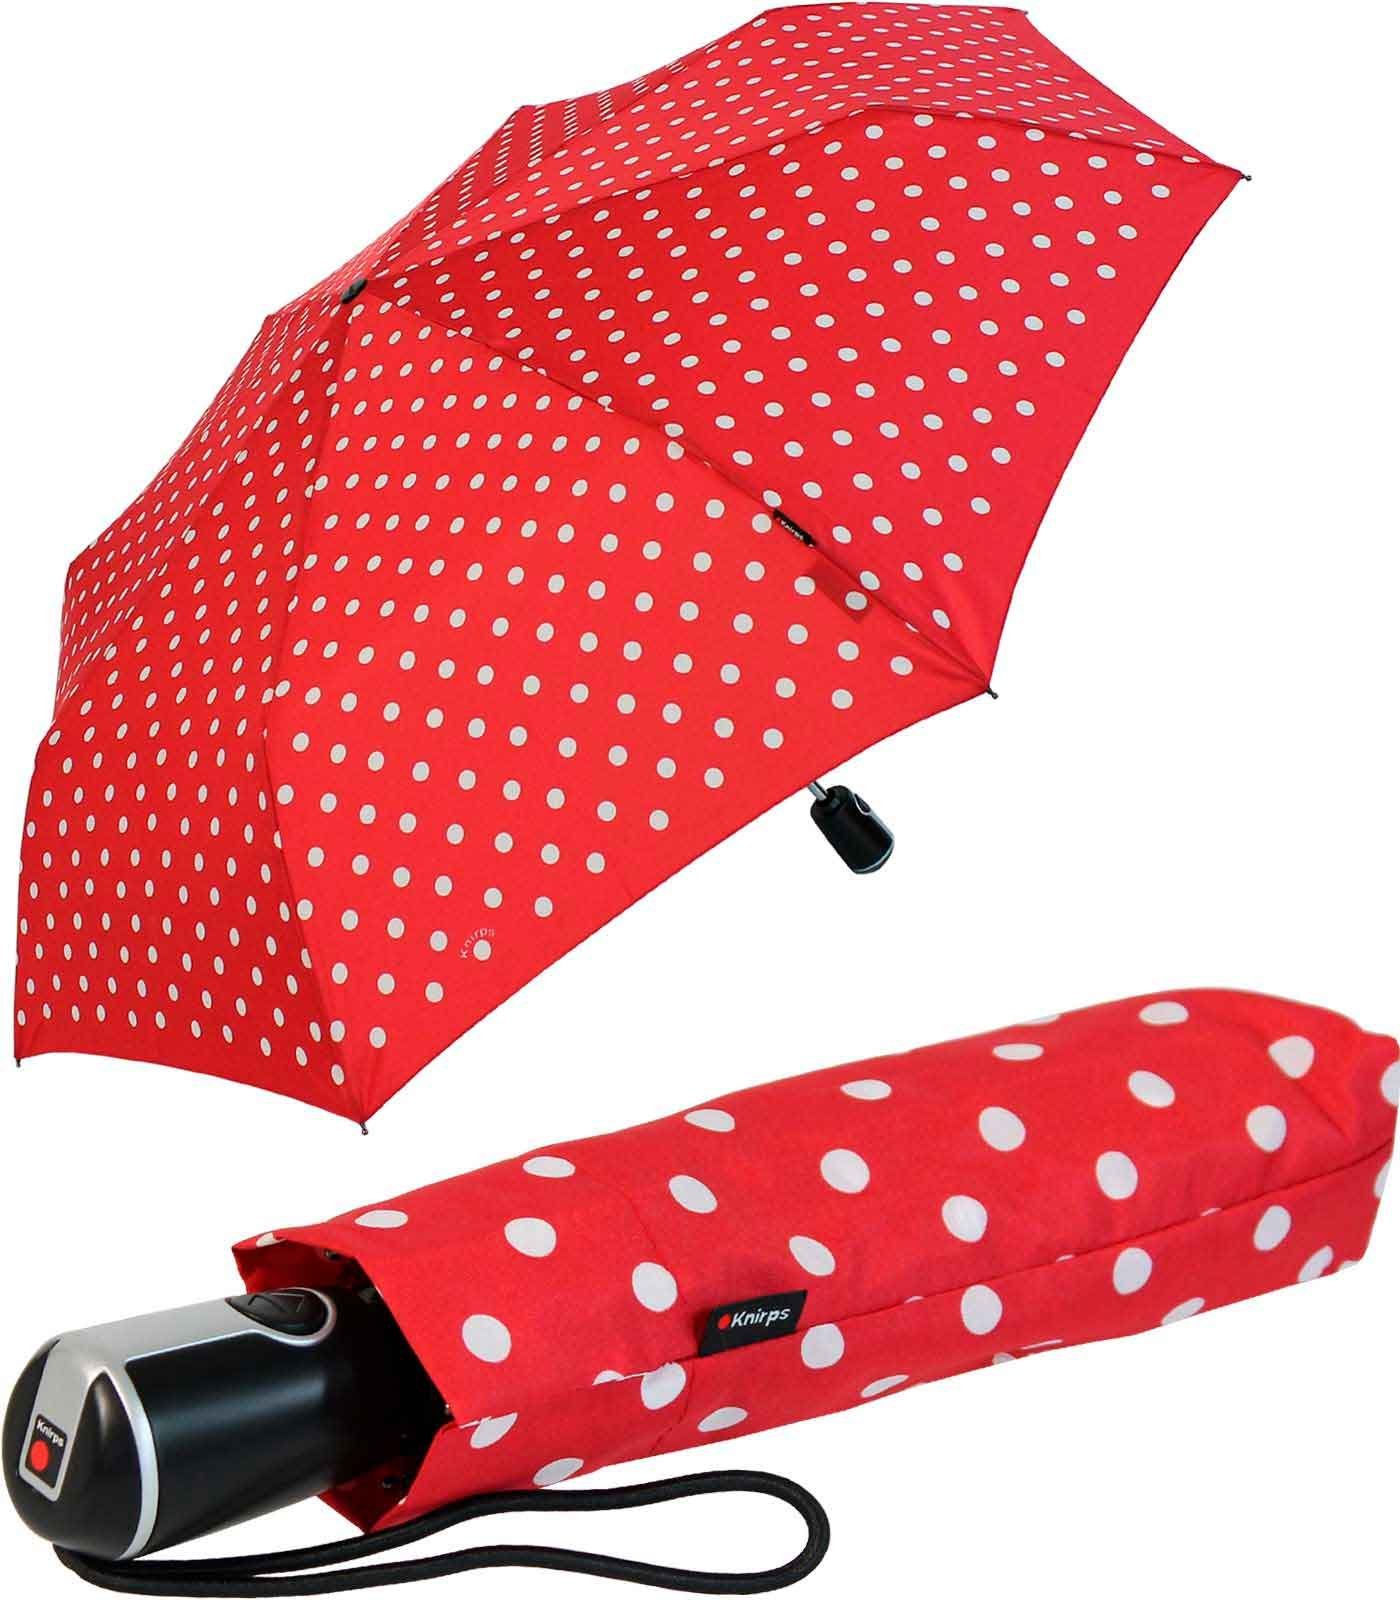 Knirps® Taschenregenschirm Large Duomatic mit Auf-Zu-Automatik - Polka Dots, der große, stabile Begleiter rot-weiß